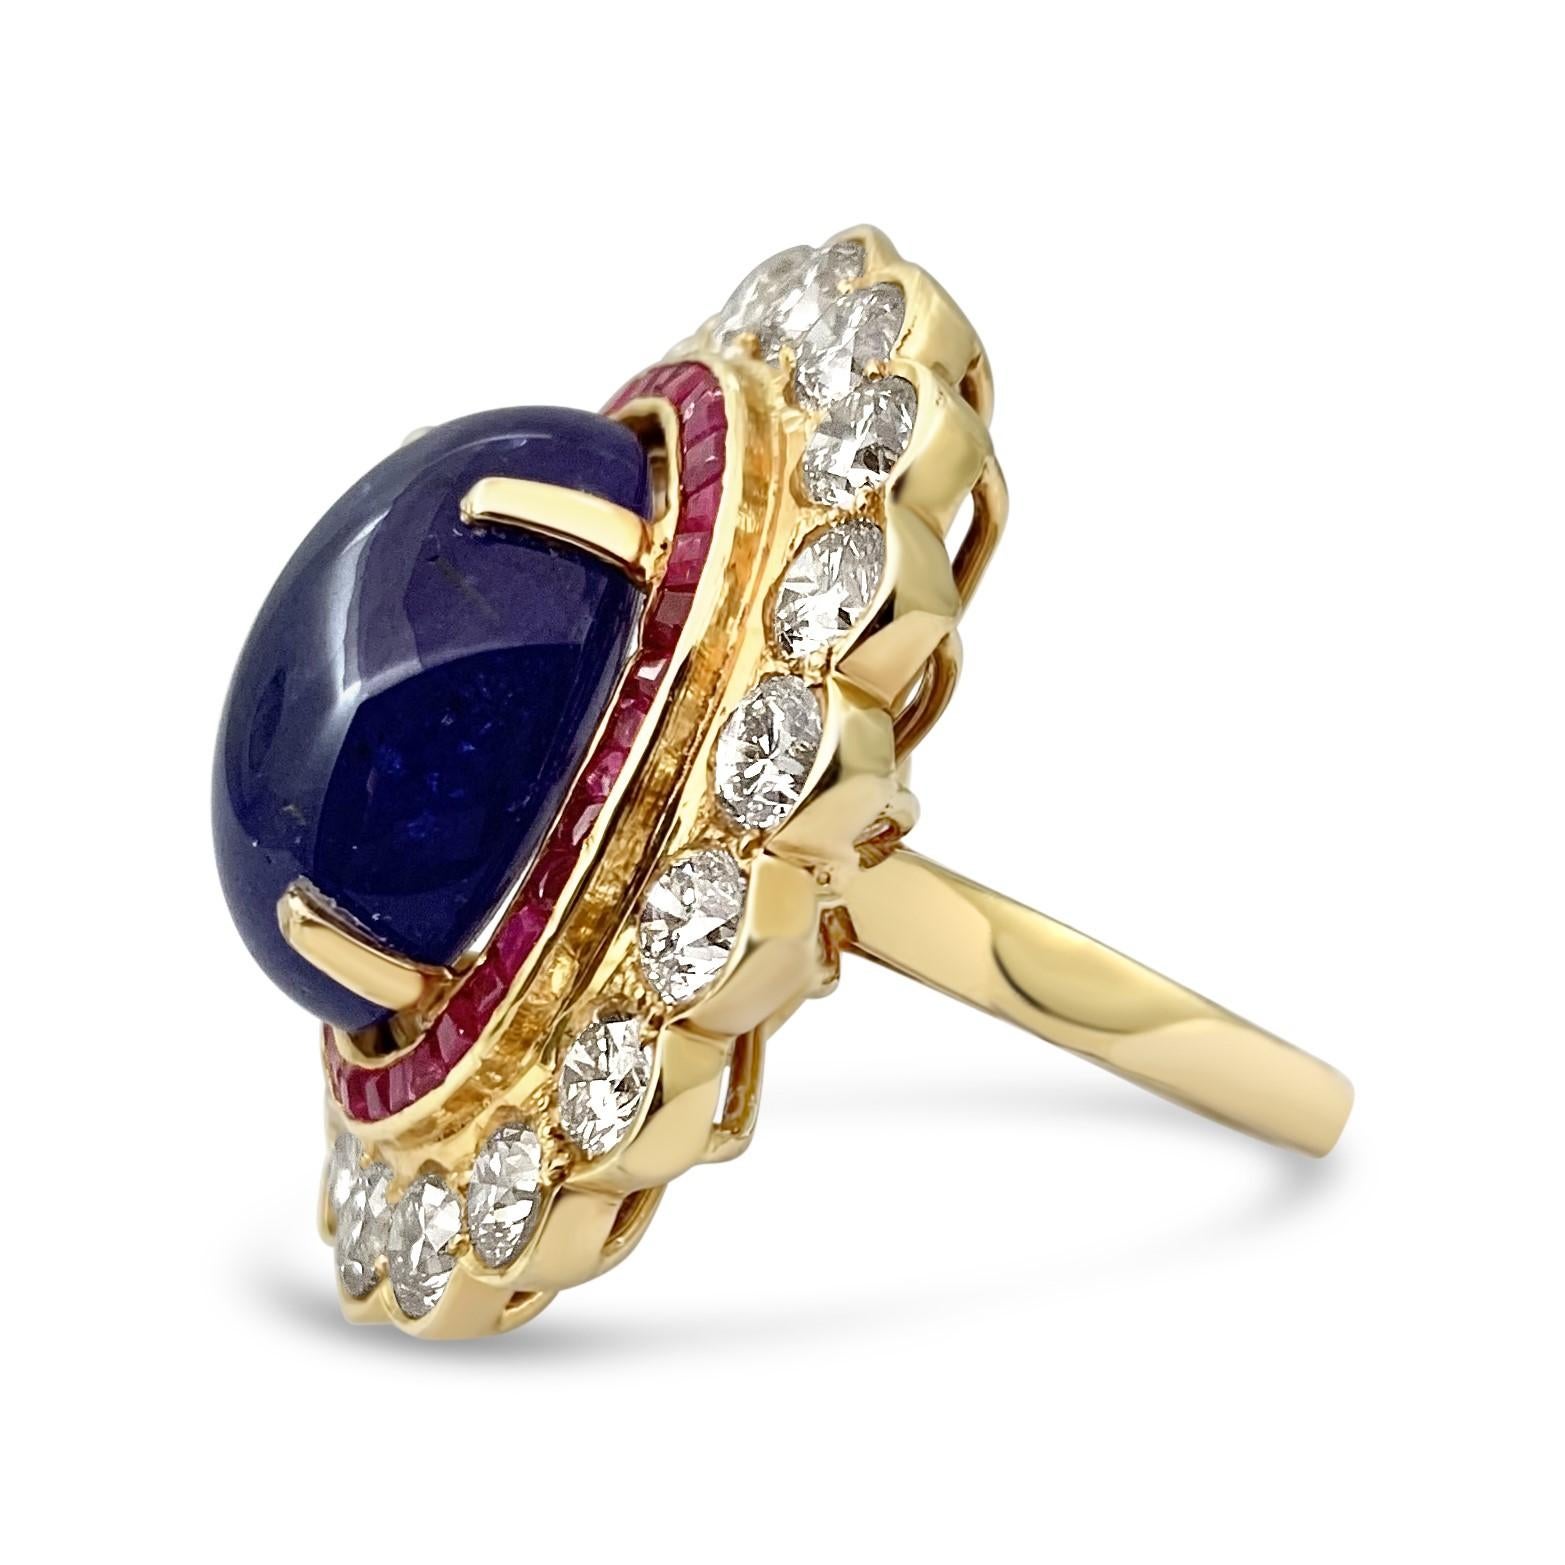 Wir präsentieren unseren exquisiten 19,61-Karat-Tanzanit-Ring mit einem Rubin- und weißen Diamant-Halo, ein wahres Schmuckstück, das auf elegante Weise die faszinierende Schönheit des Tansanits zur Geltung bringt, akzentuiert durch die reiche